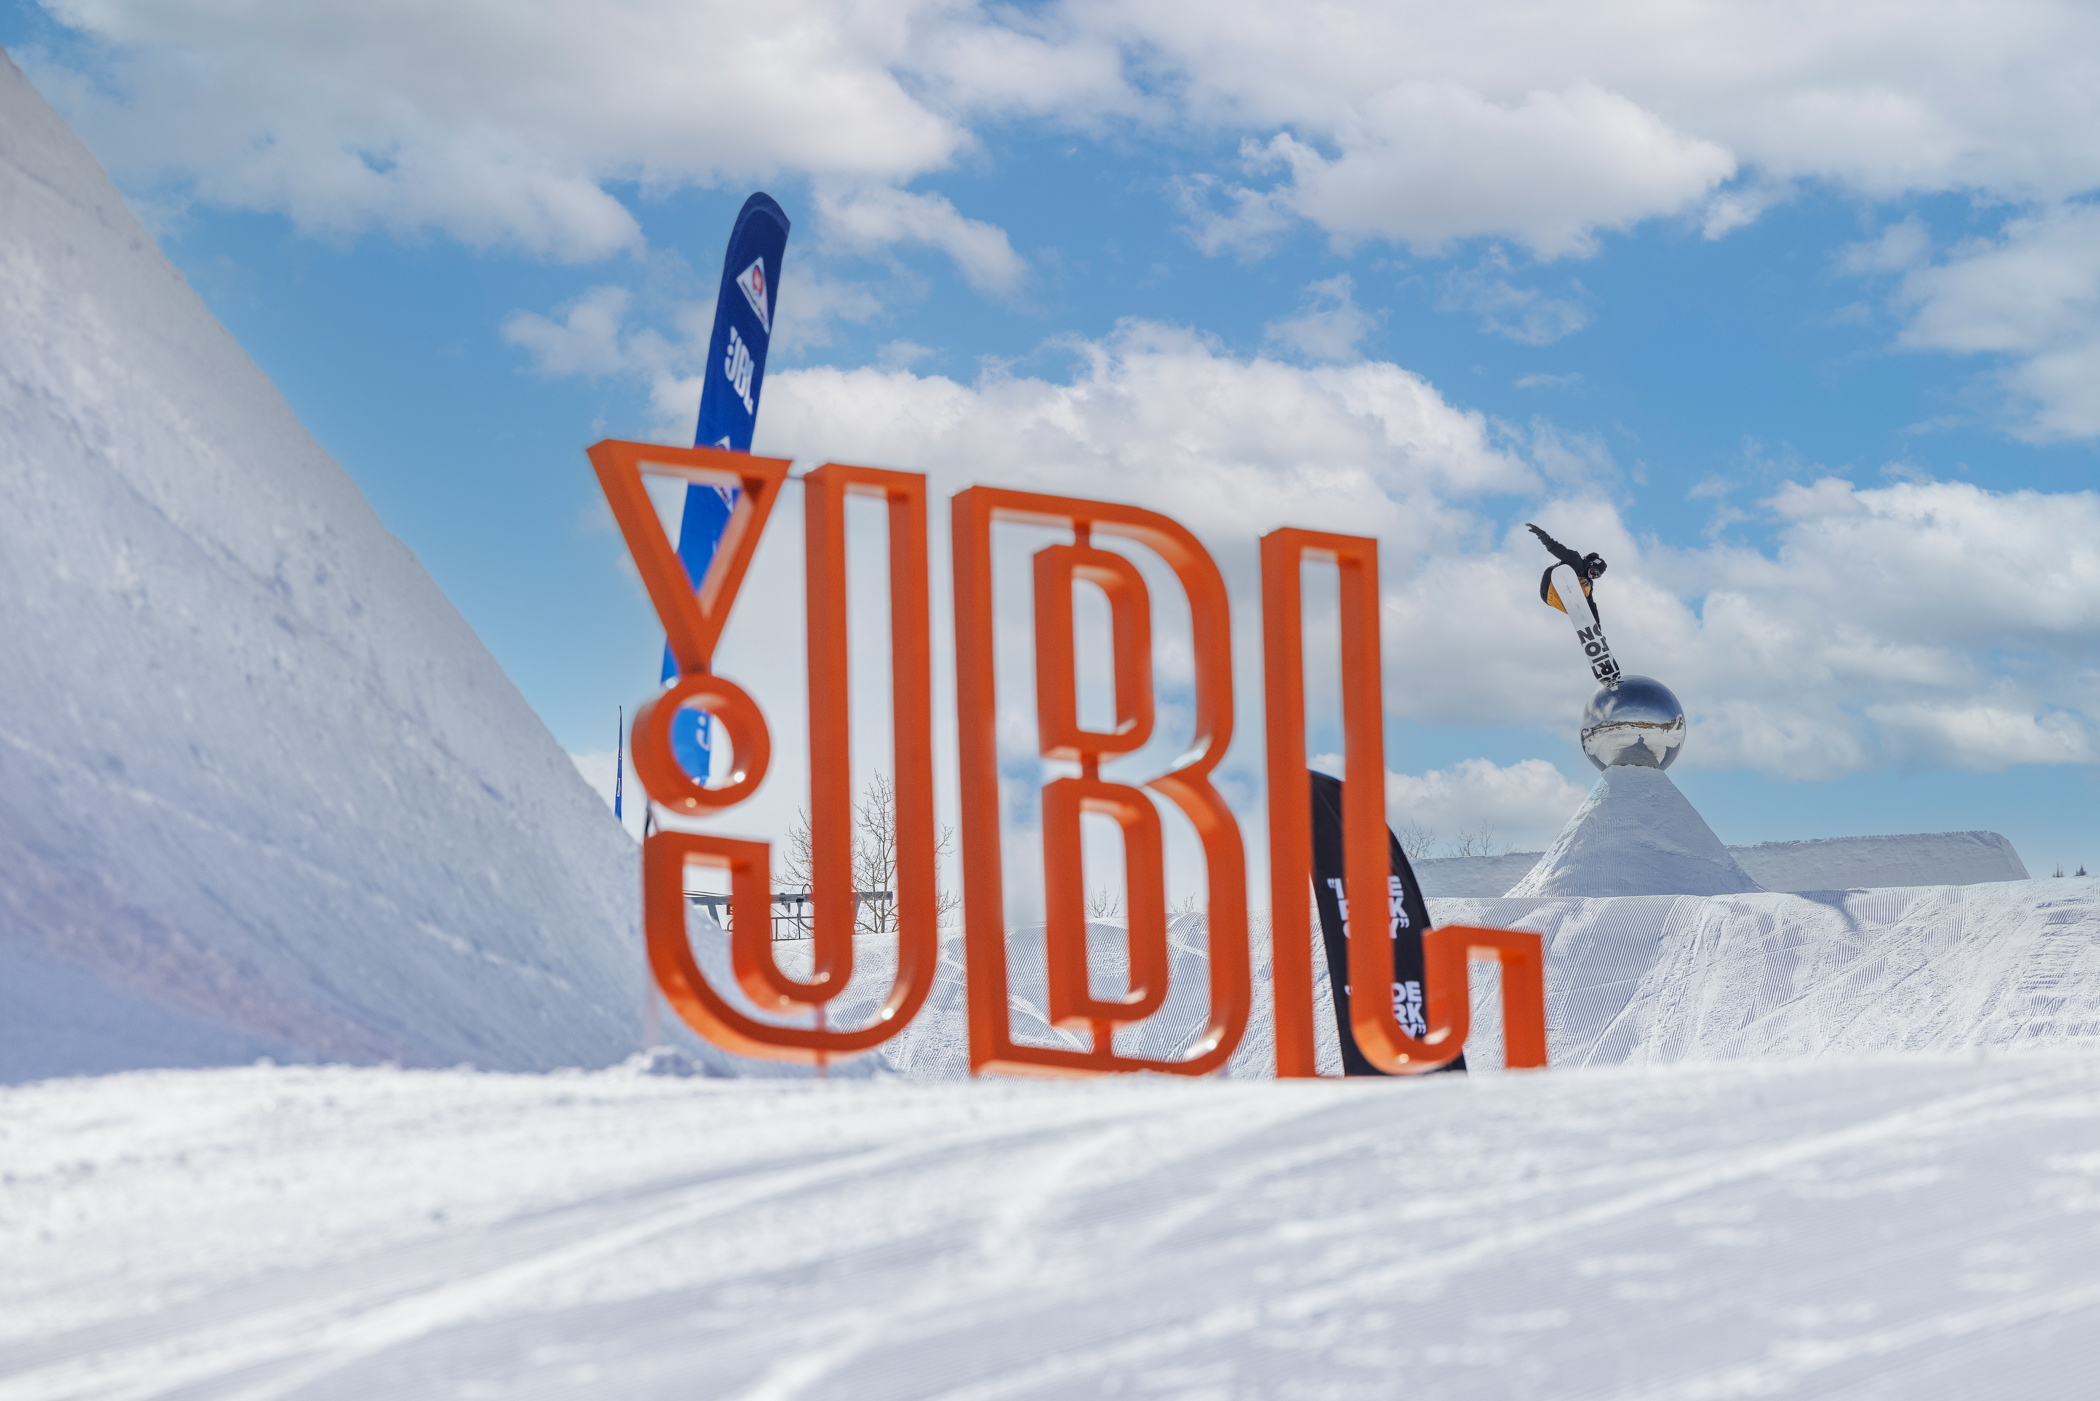 Peaks On Peaks: Zeb Powell on JBL’s Snow Show at Park City